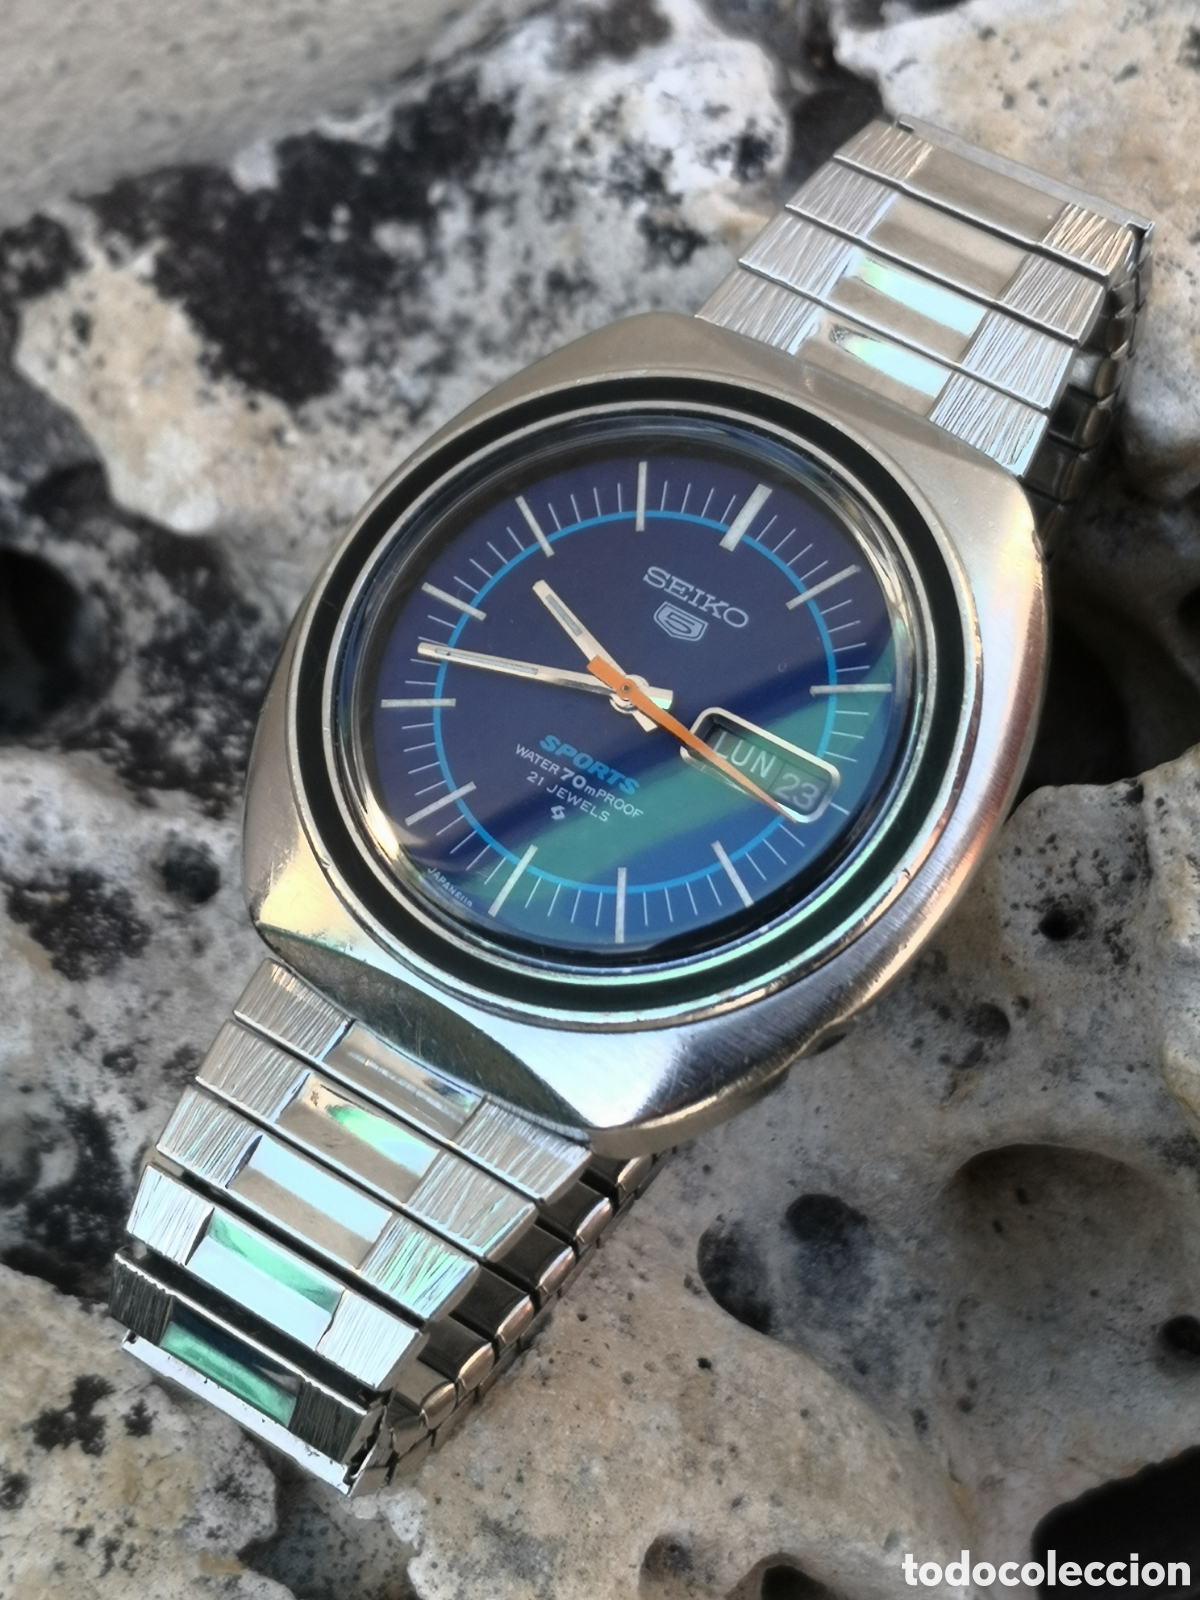 ⭐c3/6 reloj seiko automatic reparado - Buy Seiko watches on todocoleccion